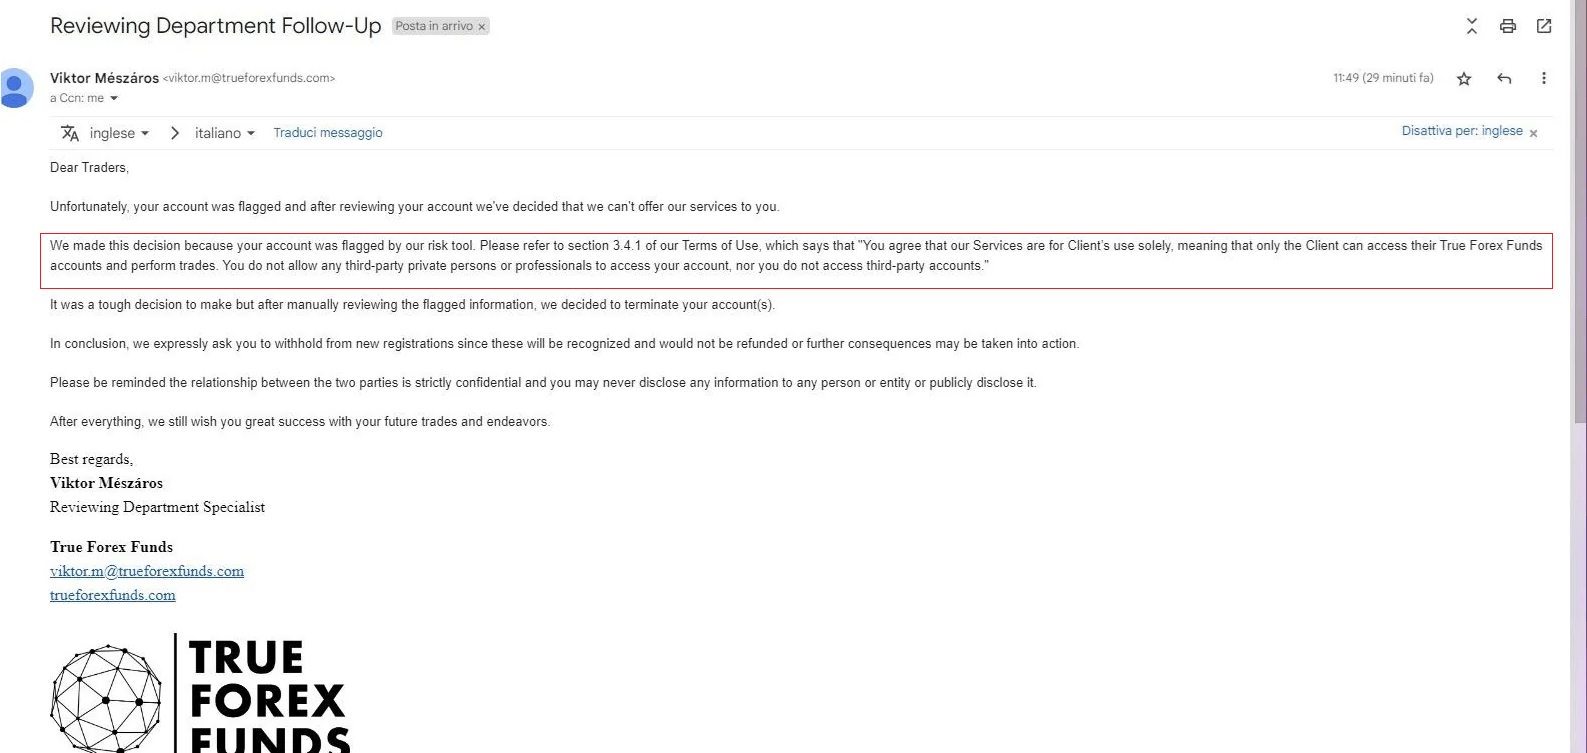 Mail informujący o zablokowaniu konta w True Forex Funds na podstawie zapisu o "udziale osób trzecich". Źródło: Reddit